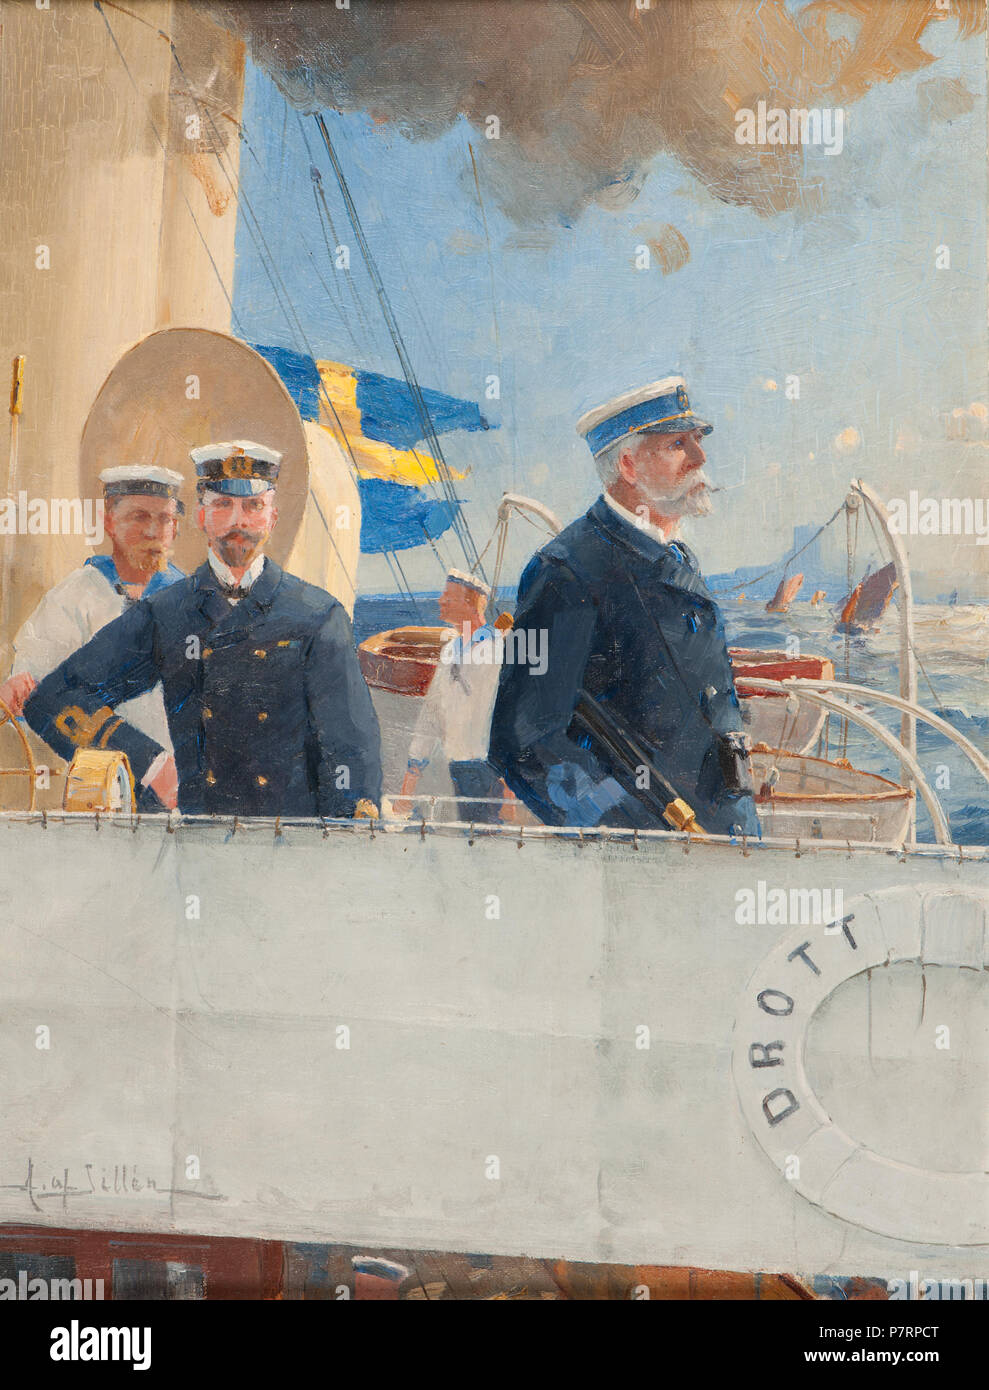 260 Marinmotiv-Kommandobrygga med Oscar II och Herman af Sillén.  Chefsfartyg - Sjöhistoriska museet - O 11346 Stock Photo - Alamy